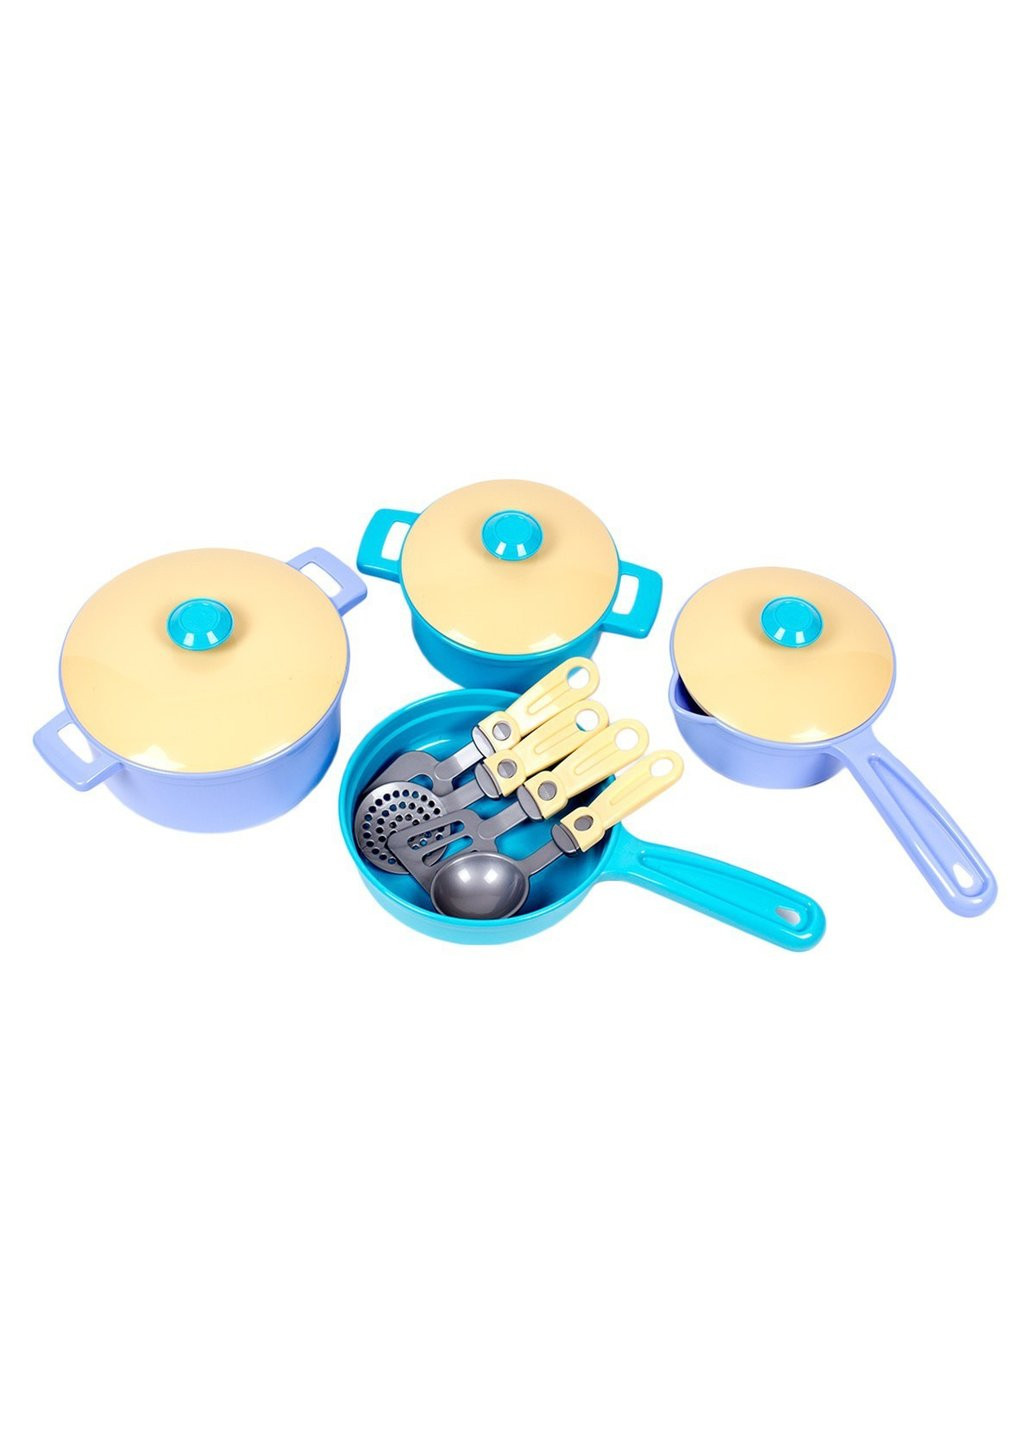 Игровой набор детской посуды Технок T-4432 11 предметов ТехноК (254708491)